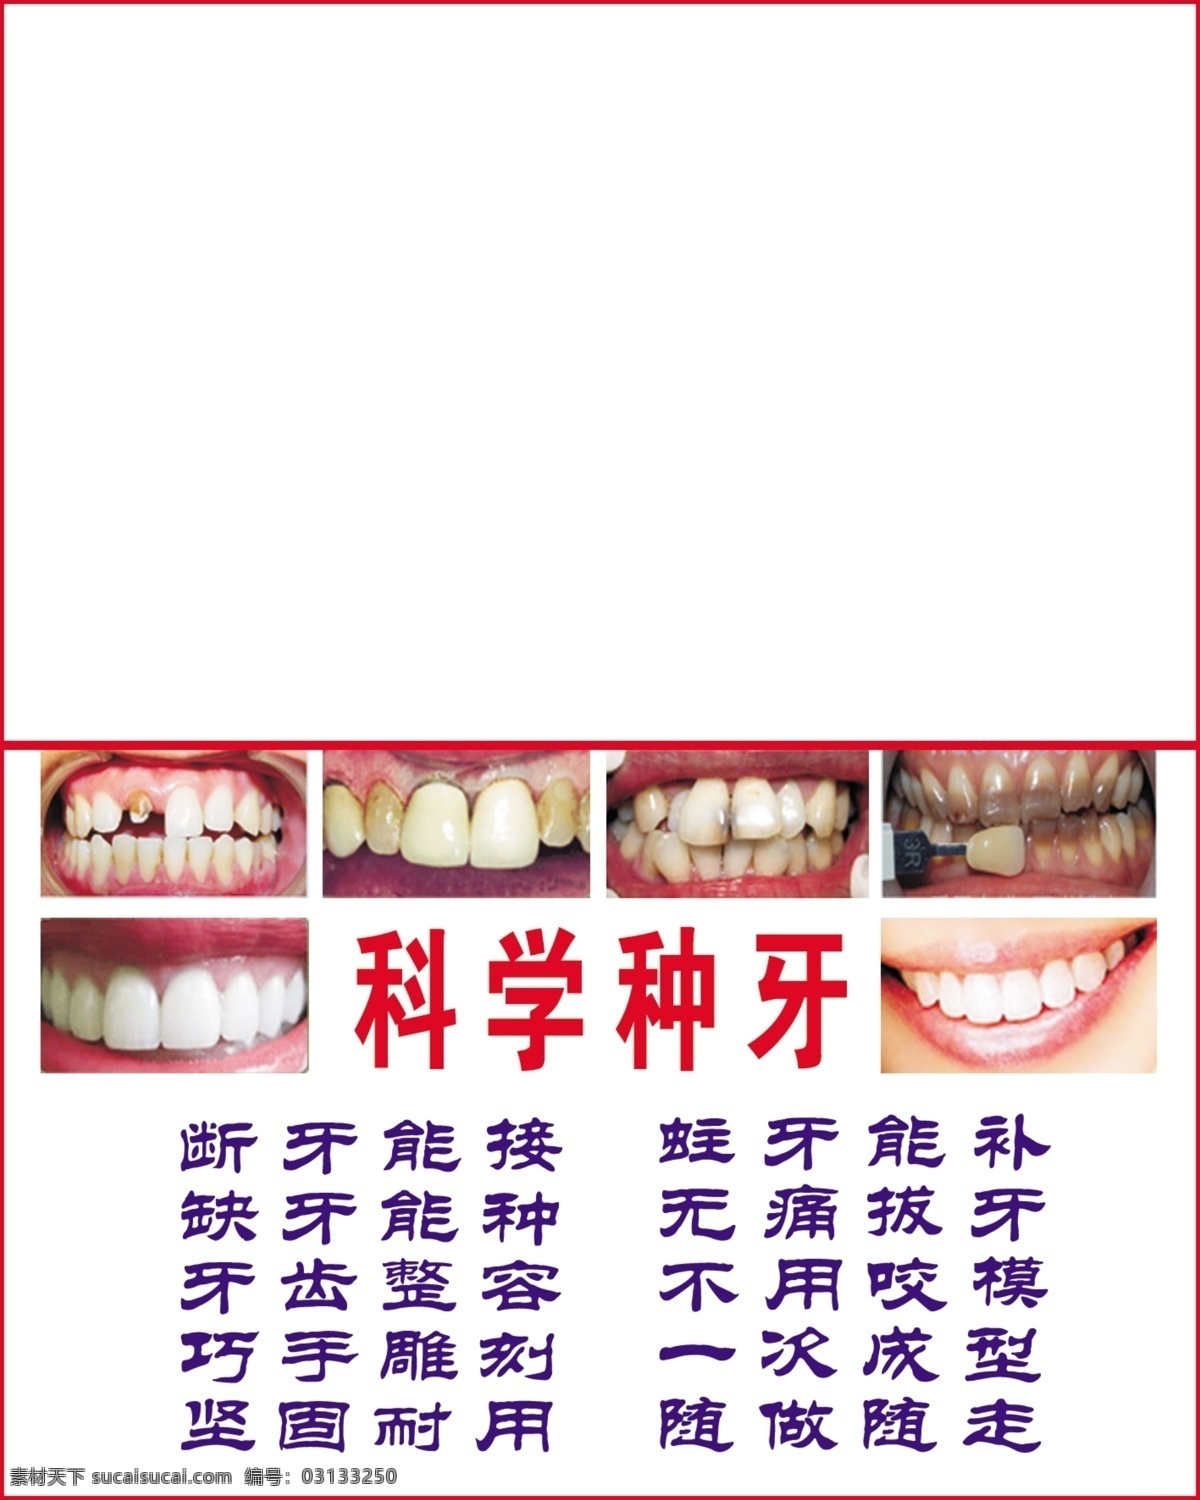 种 牙 广告设计模板 其他模版 牙齿 牙科 源文件 种牙 科学种牙 恶心的牙齿 断牙 蛀牙 缺牙 矢量图 现代科技